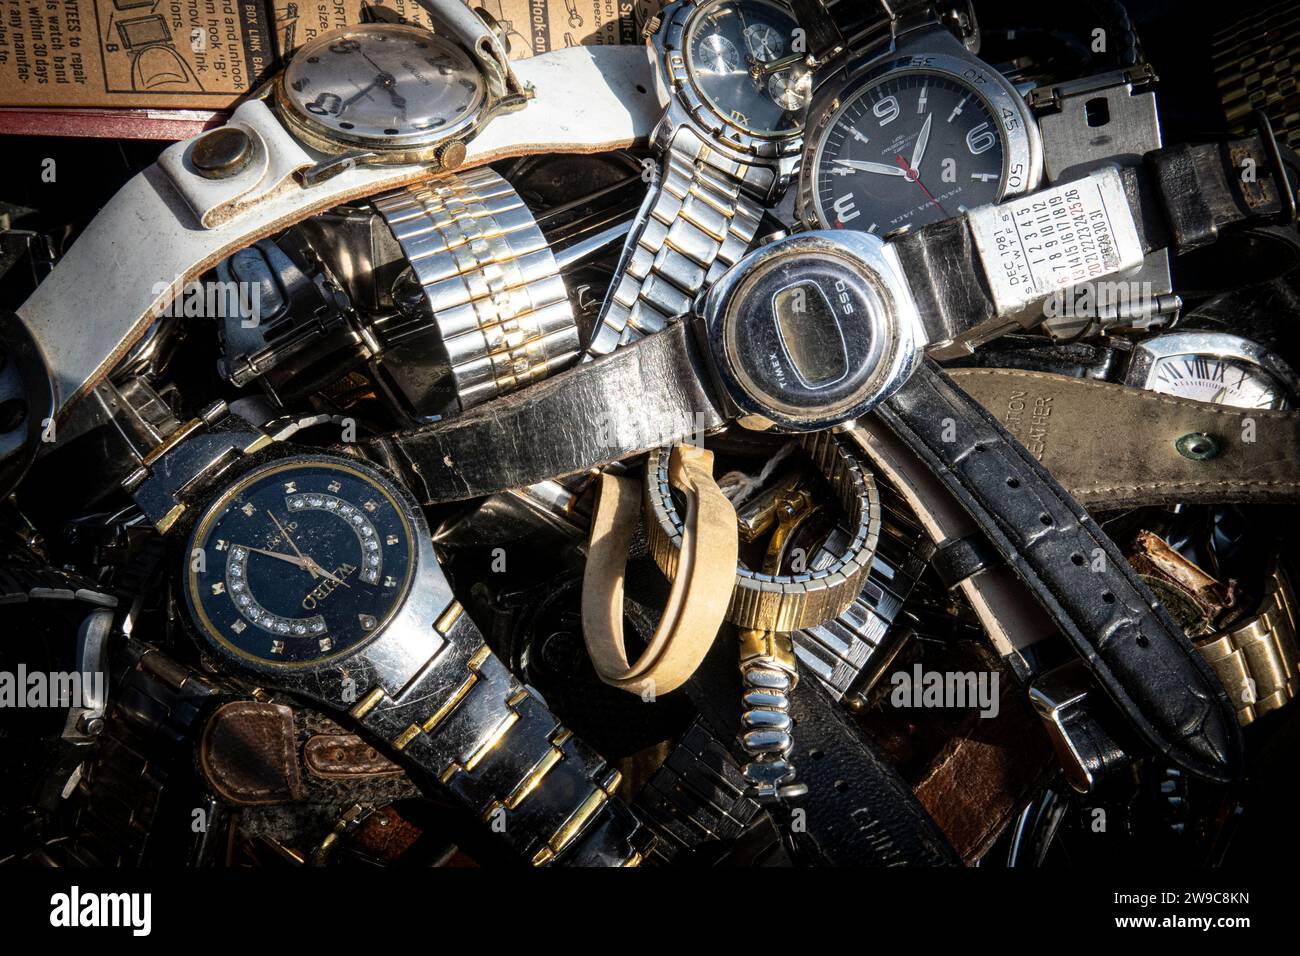 Stillleben Foto einer Sammlung alter Uhren, die auf einem Flohmarkt gefunden wurden Stockfoto